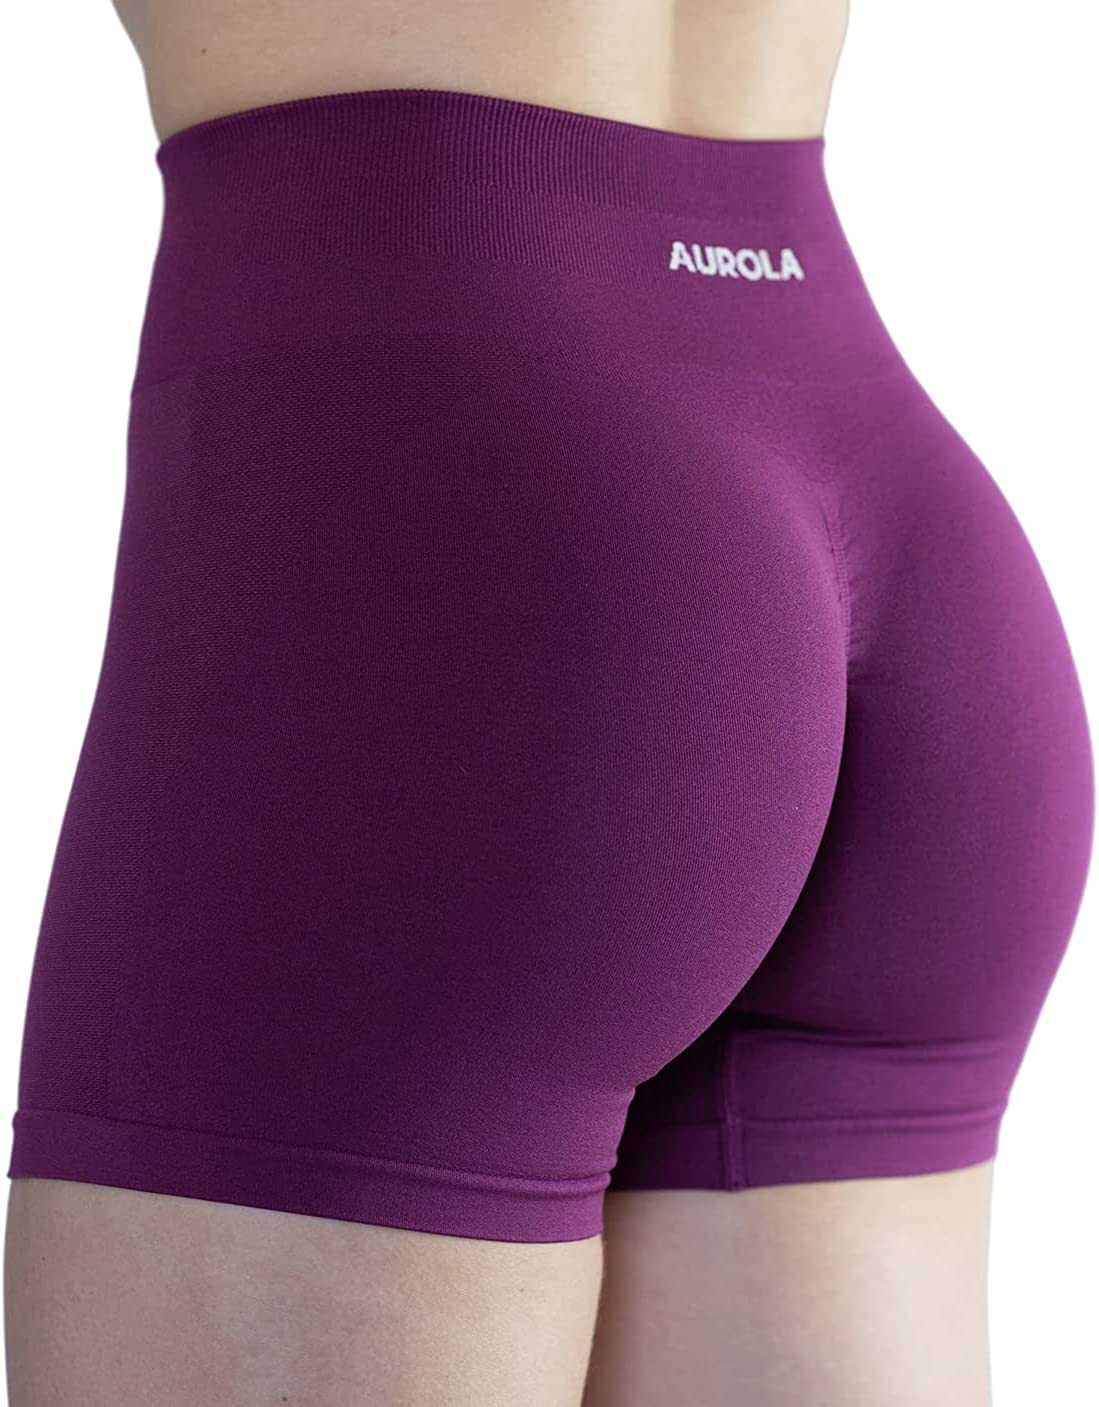 AUROLA Intensify 3.6 Workout Shorts for Women Seamless Scrunch High Waist  Gym Yoga Running Active Short